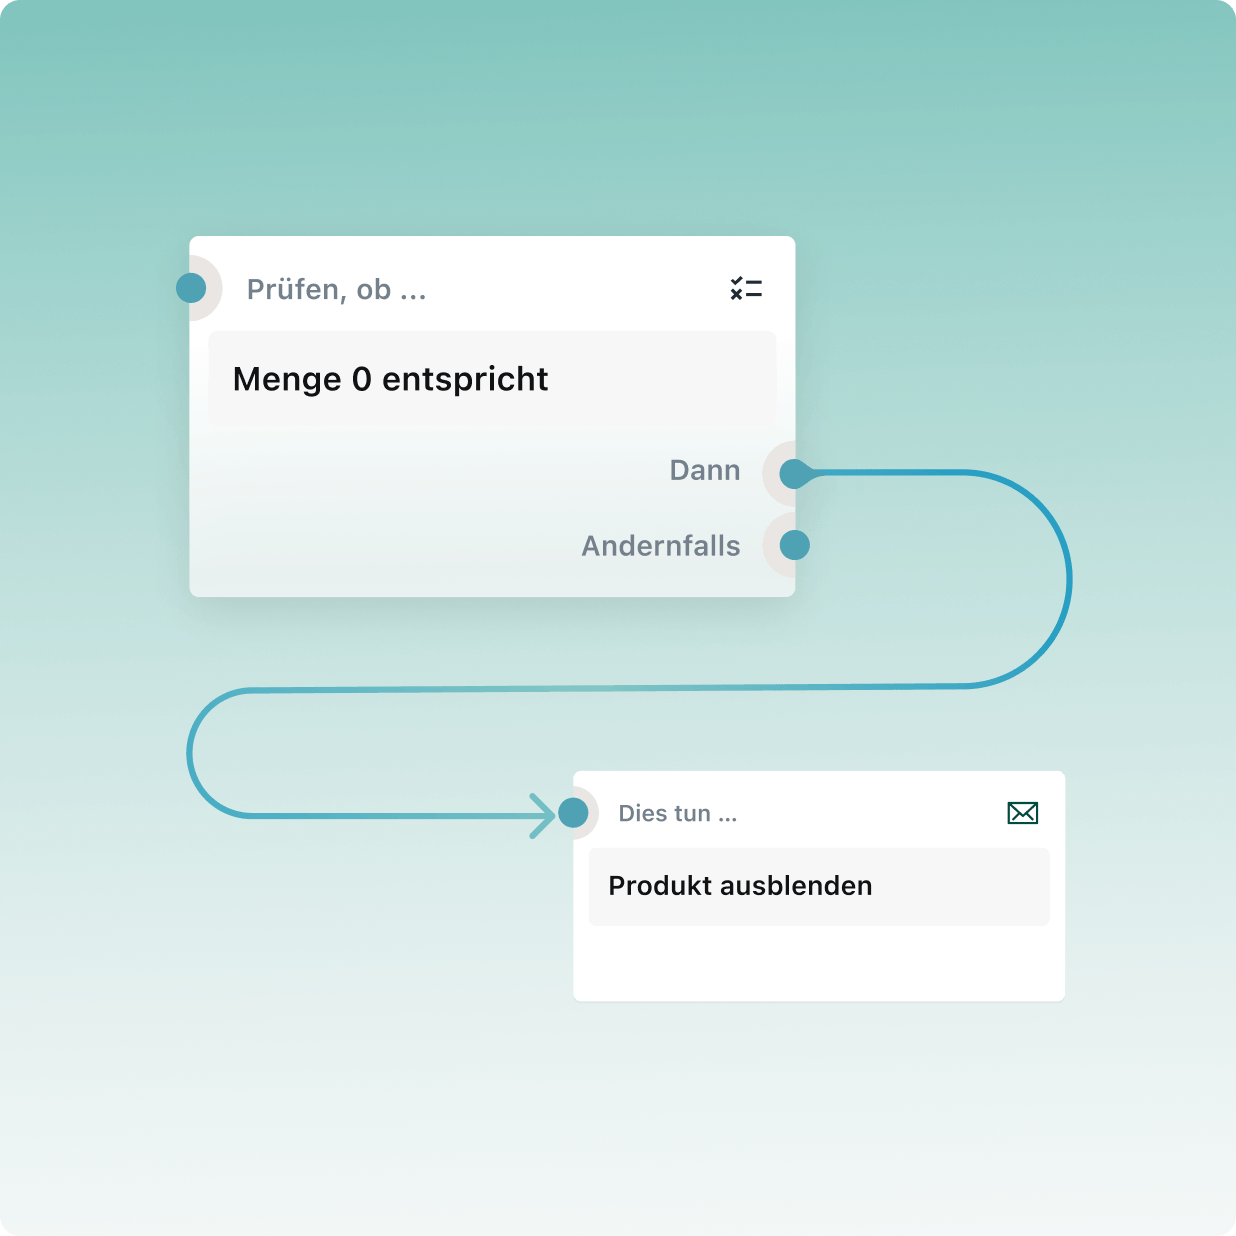 Zwei Aktionsboxen, die mit einem Pfeil verbunden sind, stellen einen Workflow mit automatisierten Aufgaben dar.